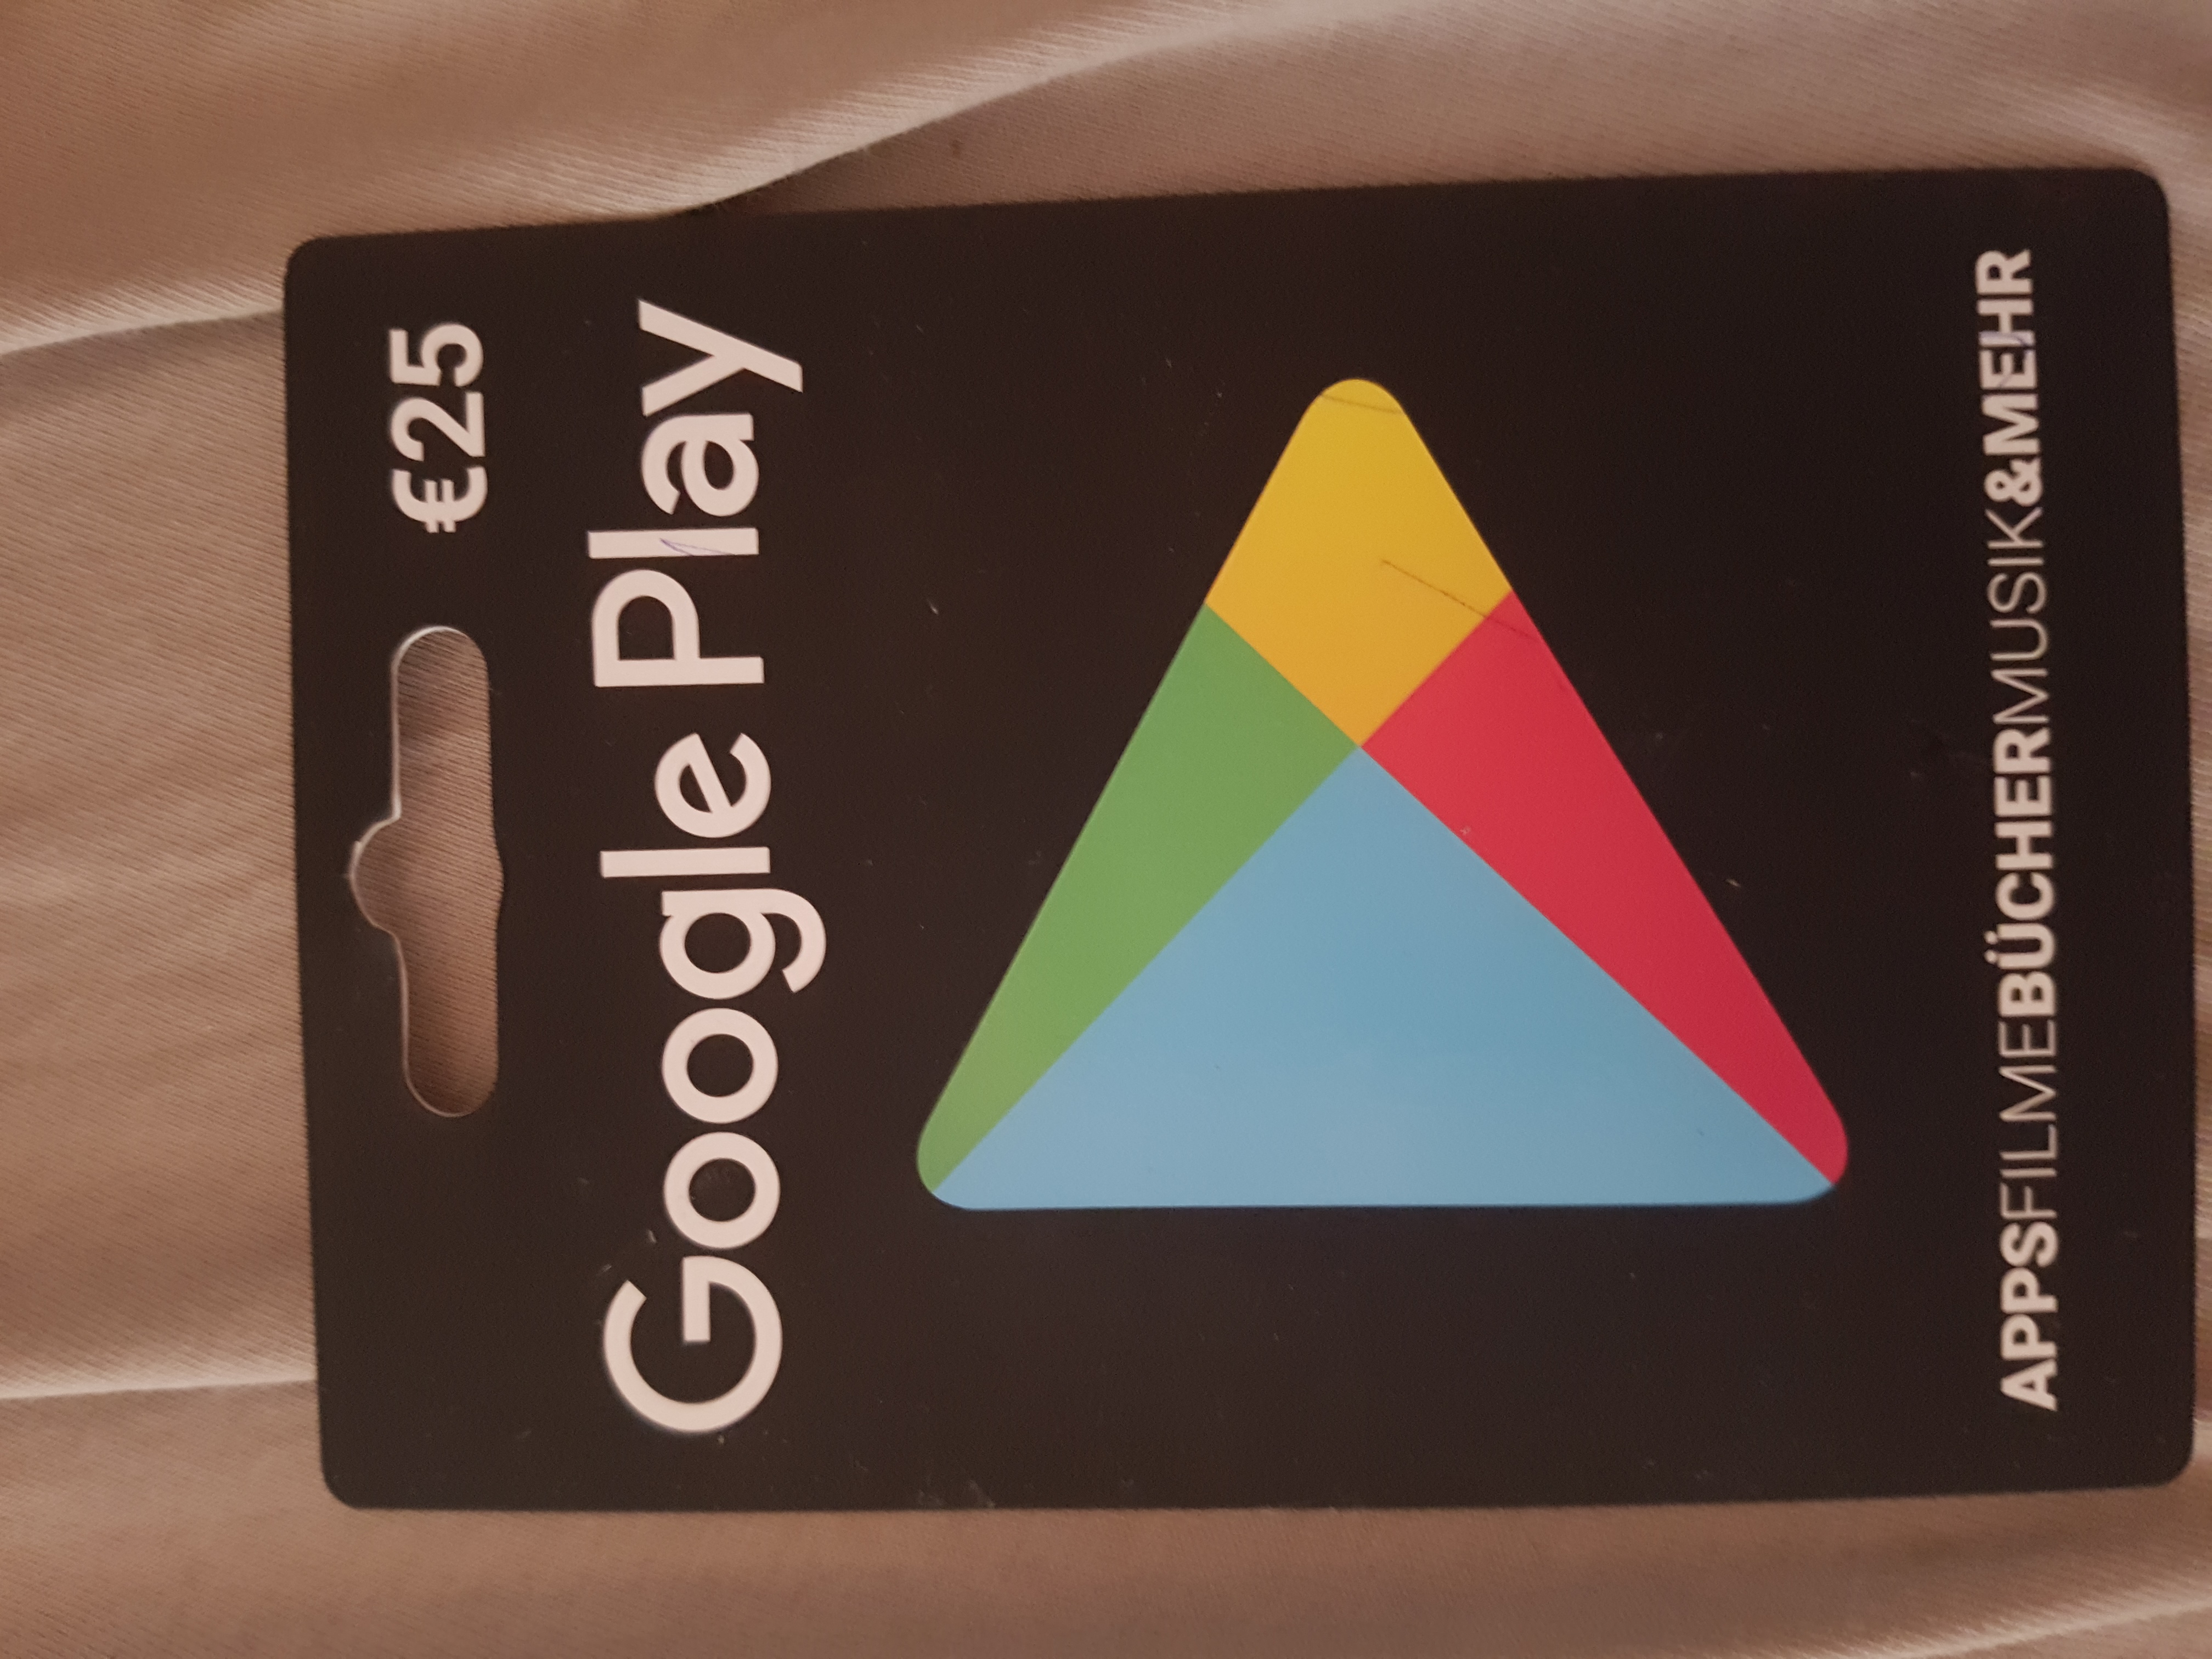 google play guthaben in paypal guthaben umwandeln computer handy smartphone - v bucks gutschein kaufen